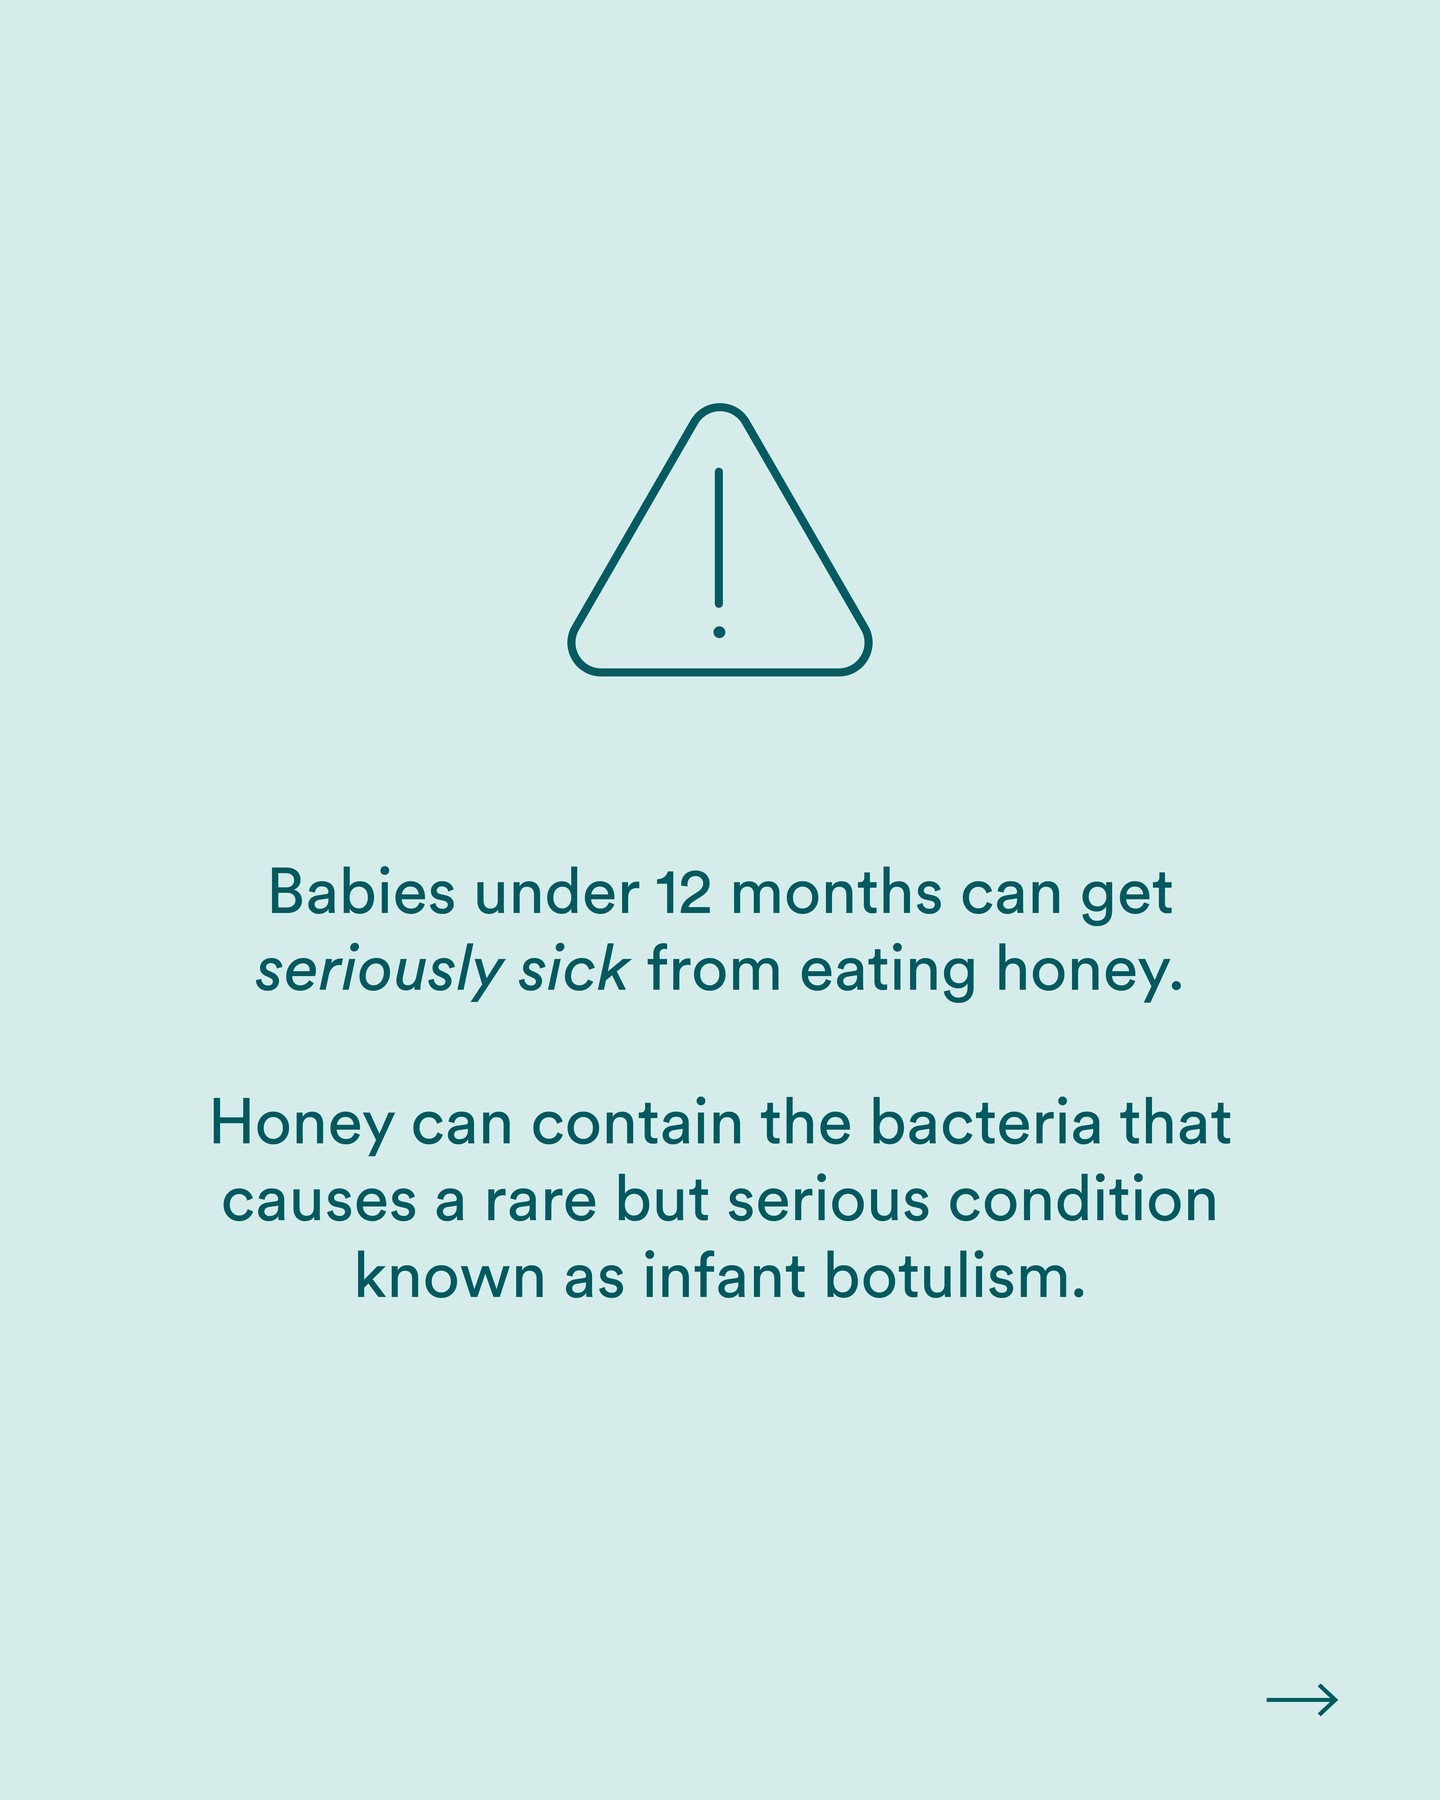 Honig kann Bakterien enthalten, die bei Säuglingen Botulismus, eine manchmal tödliche Infektion, verursachen können